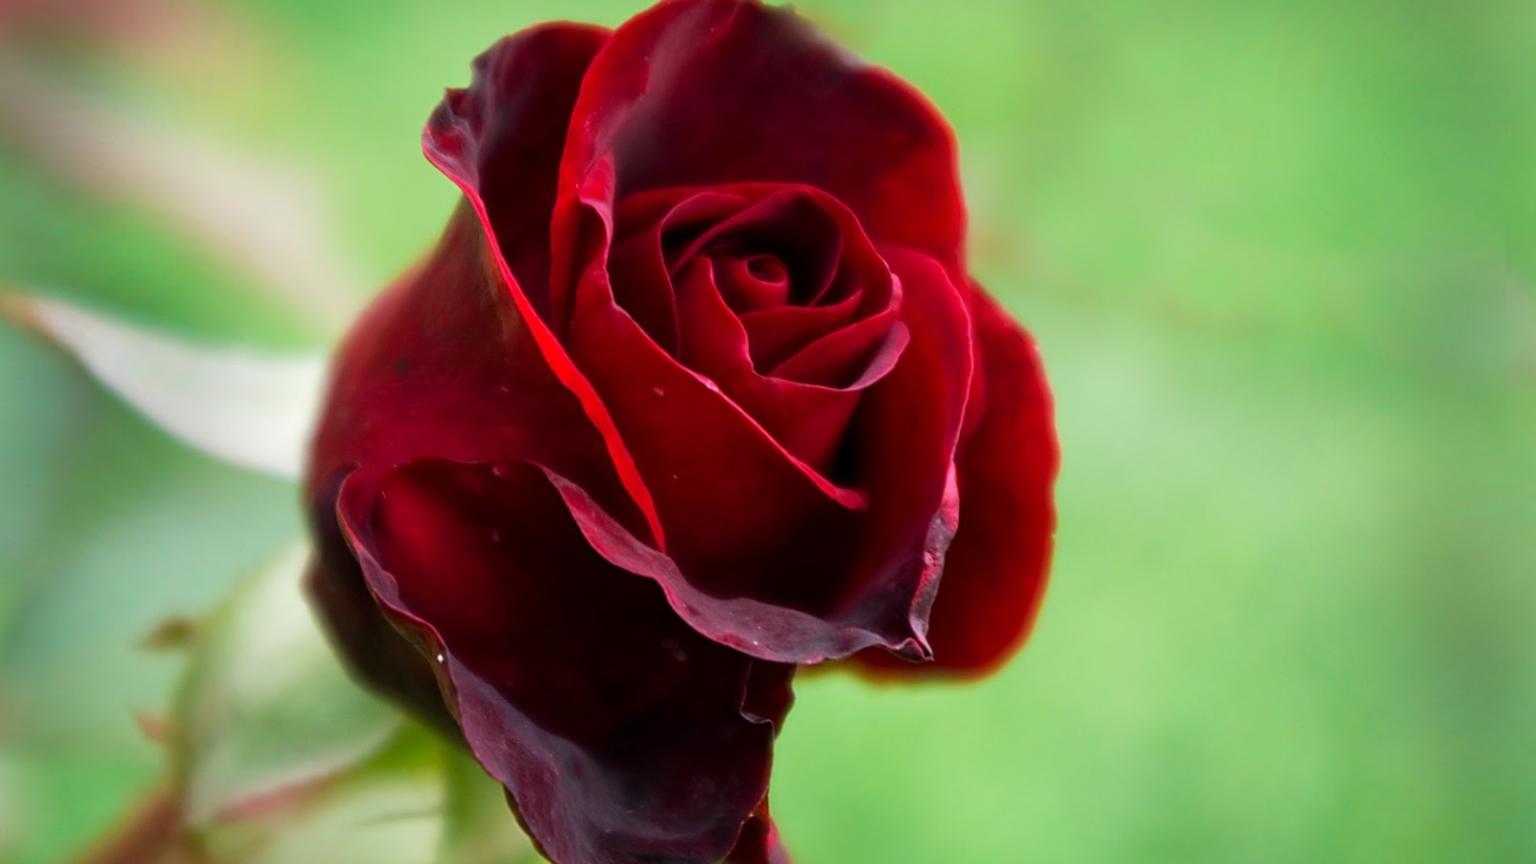 rose wallpaper hd,fiore,pianta fiorita,rose da giardino,rosso,petalo